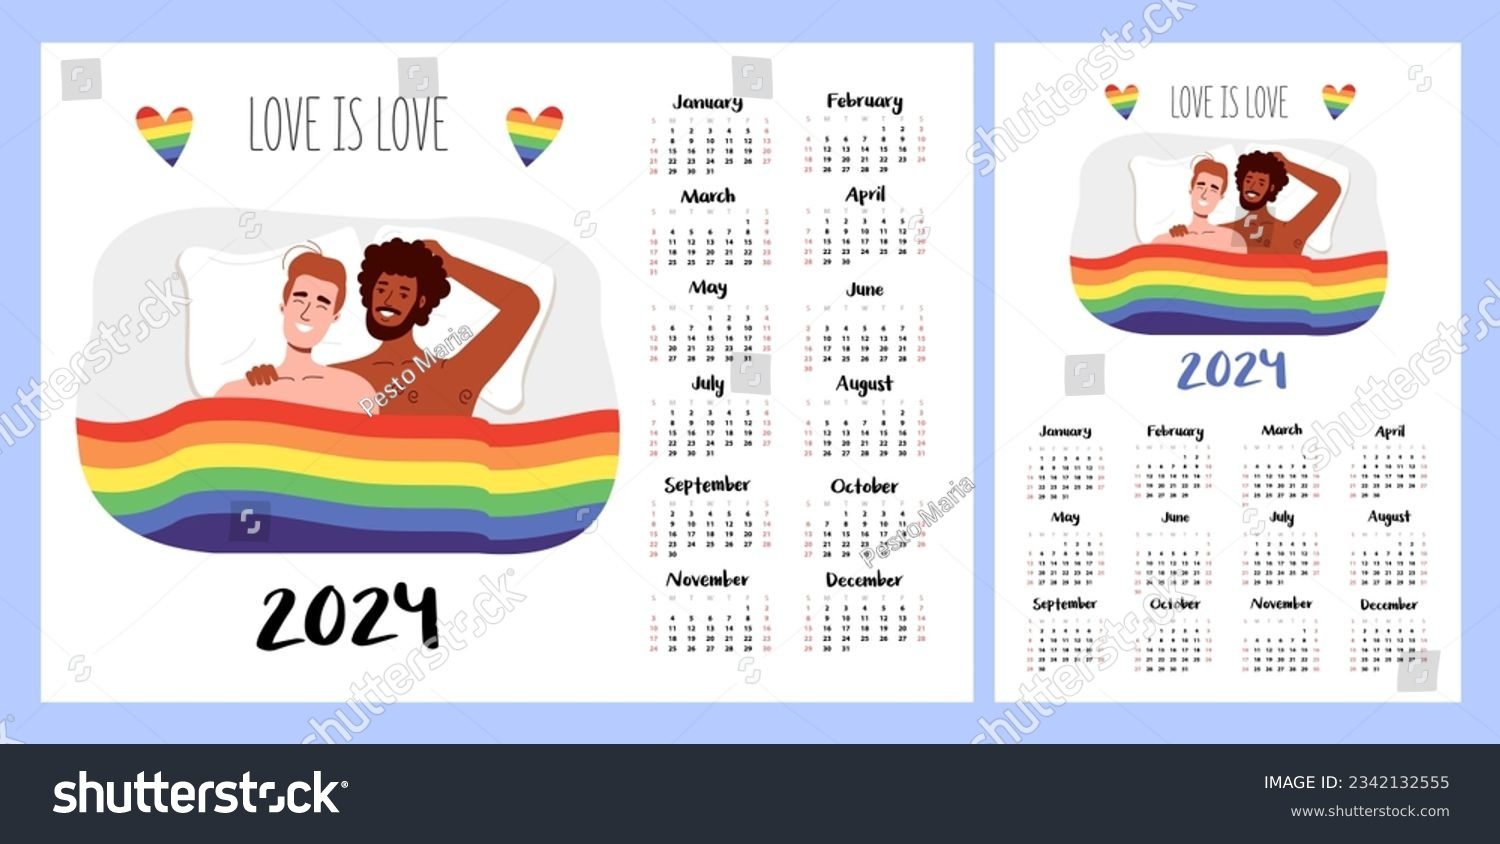 Kalenderlayout Für 2024. Frauen Haben Sex.: Stock-Vektorgrafik pertaining to June Lgbt Pride Month Calendar 2024